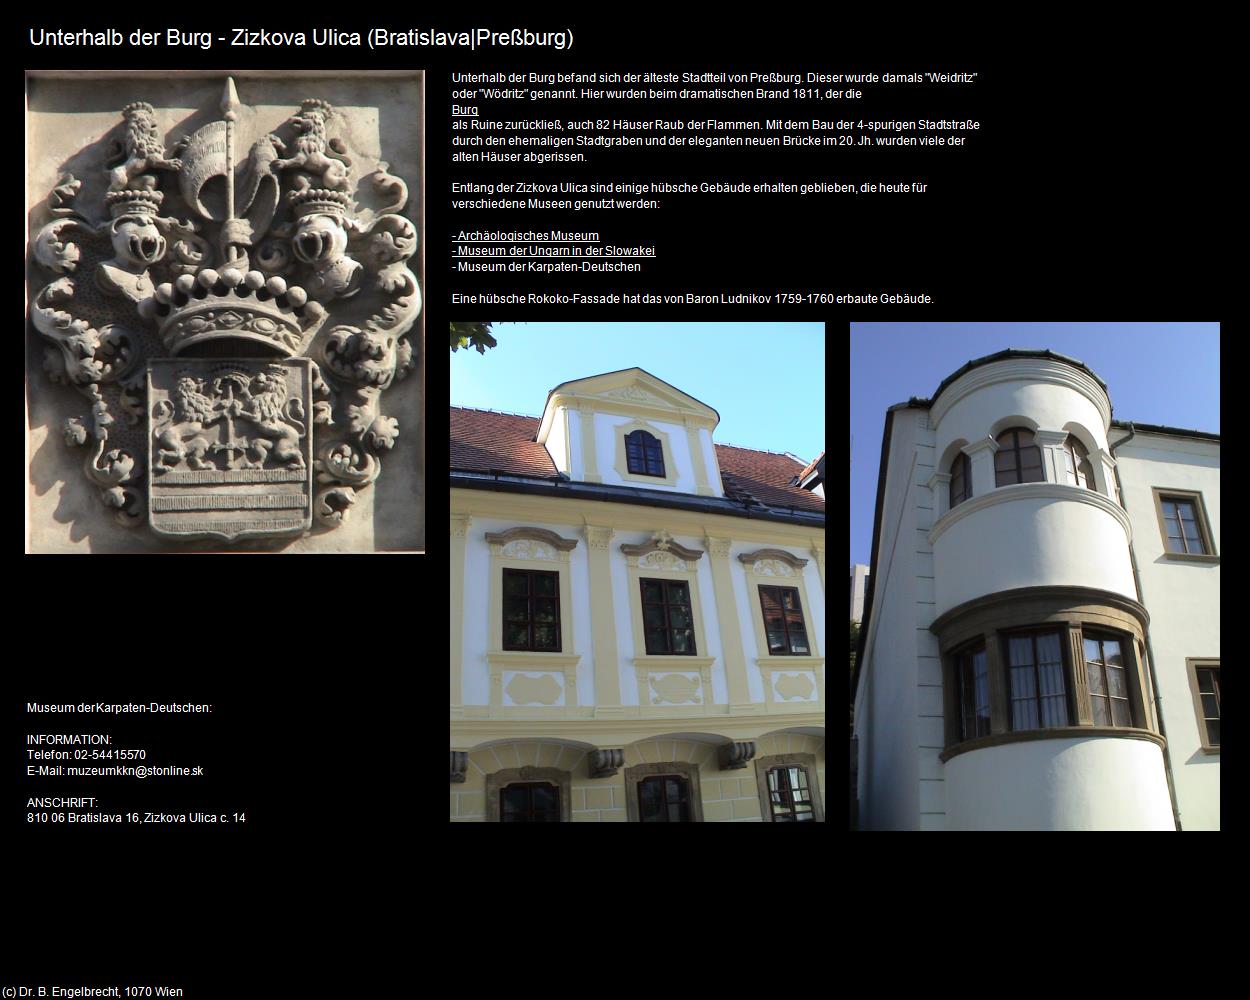 Unterhalb der Burg - Zizkova Ulica (Bratislava|Preßburg ) in SLOWAKEI(c)B.Engelbrecht